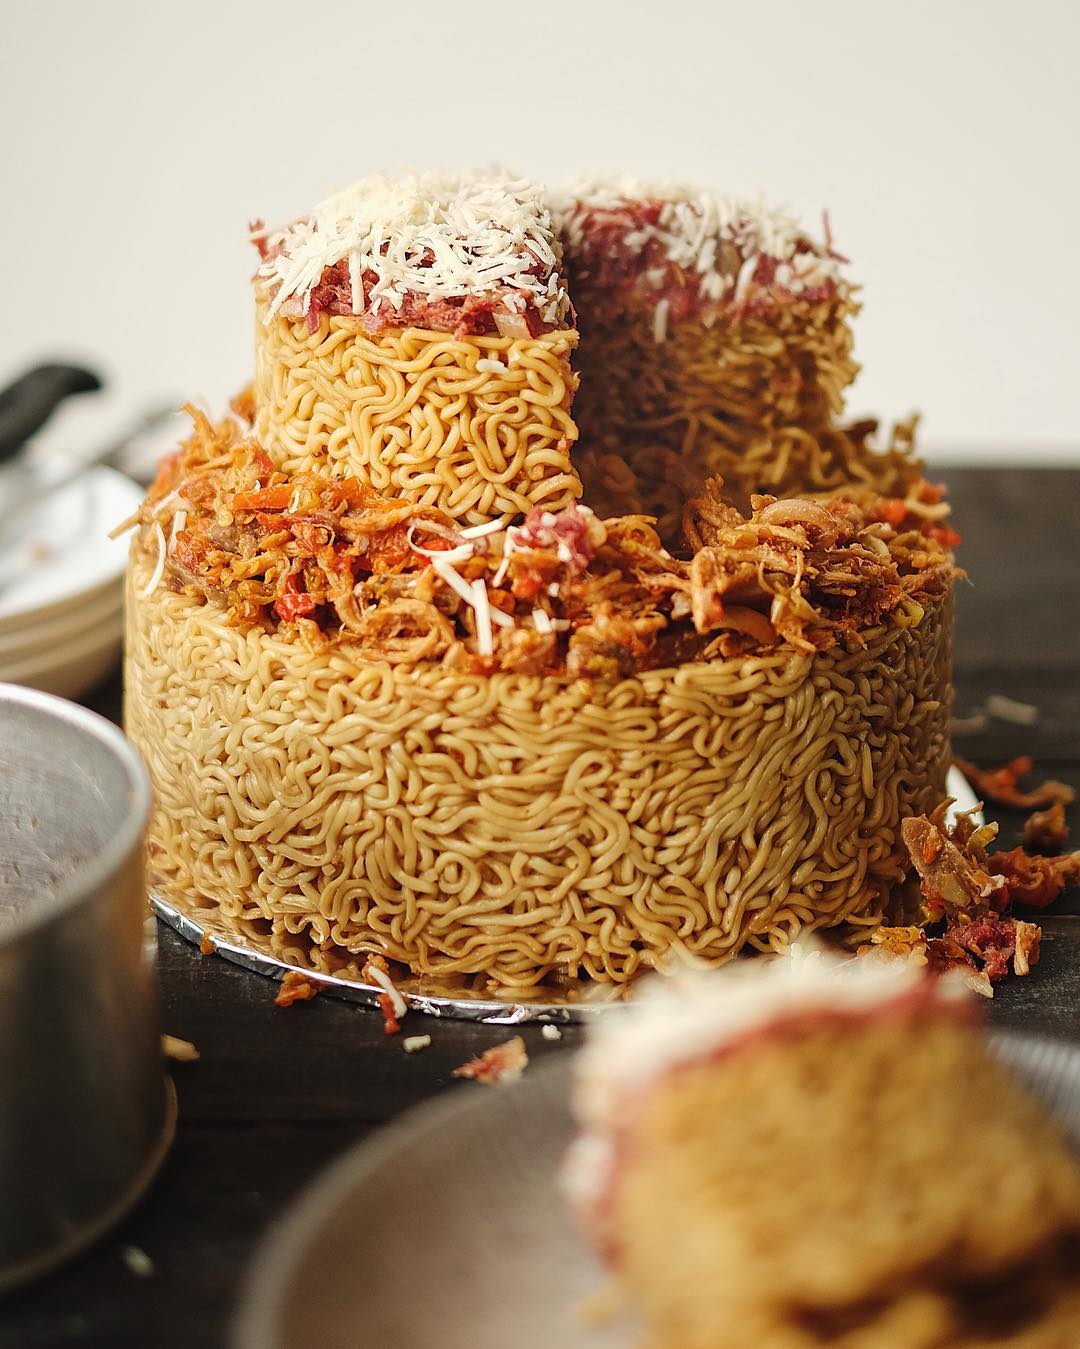 Kue ulang tahun berbahan dasar indomie (Sumber: Instagram).